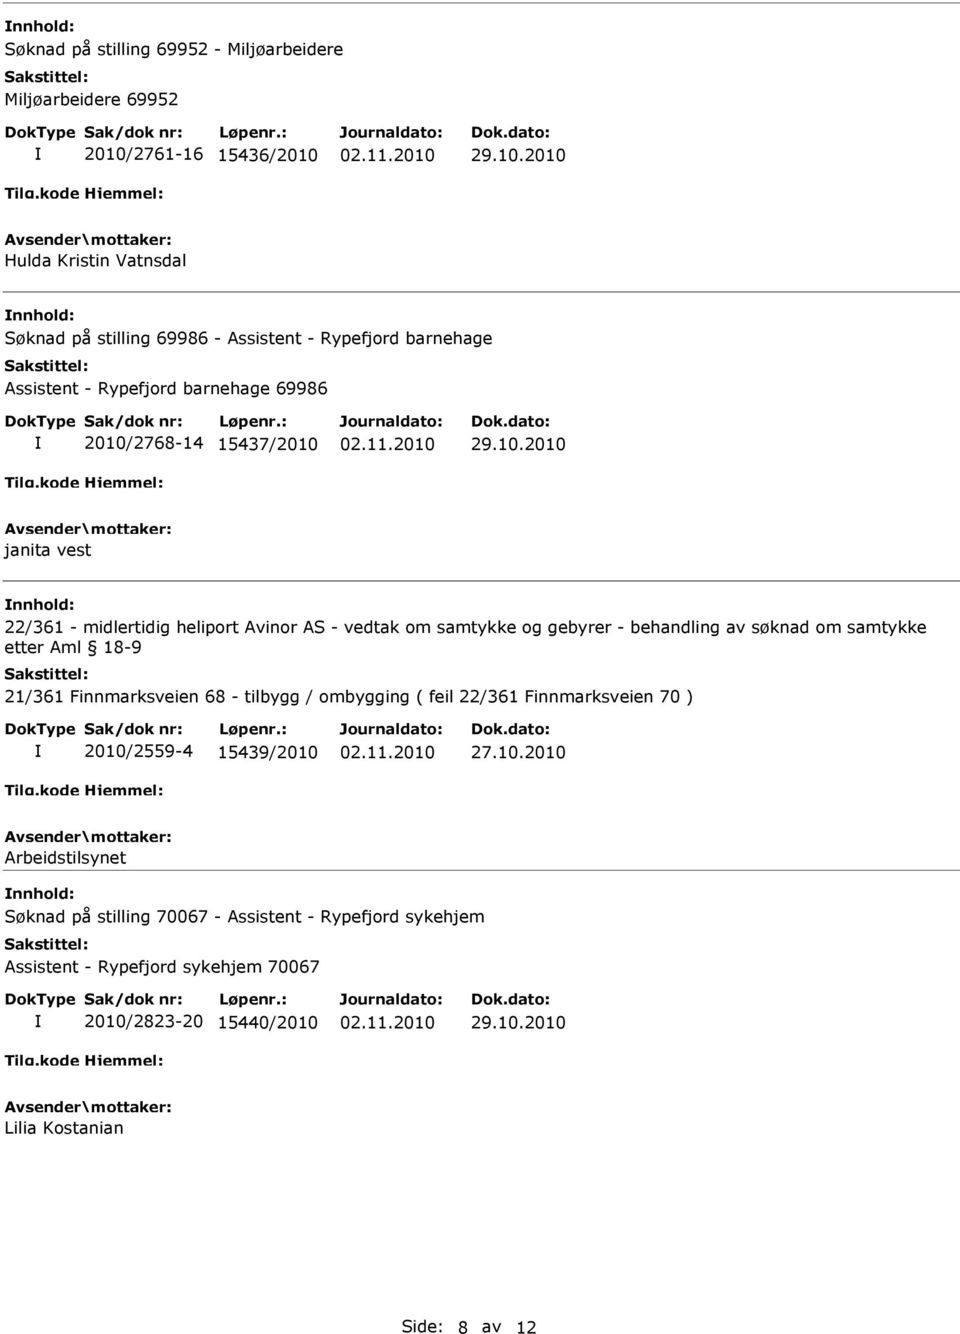 gebyrer - behandling av søknad om samtykke etter Aml 18-9 21/361 Finnmarksveien 68 - tilbygg / ombygging ( feil 22/361 Finnmarksveien 70 ) 2010/